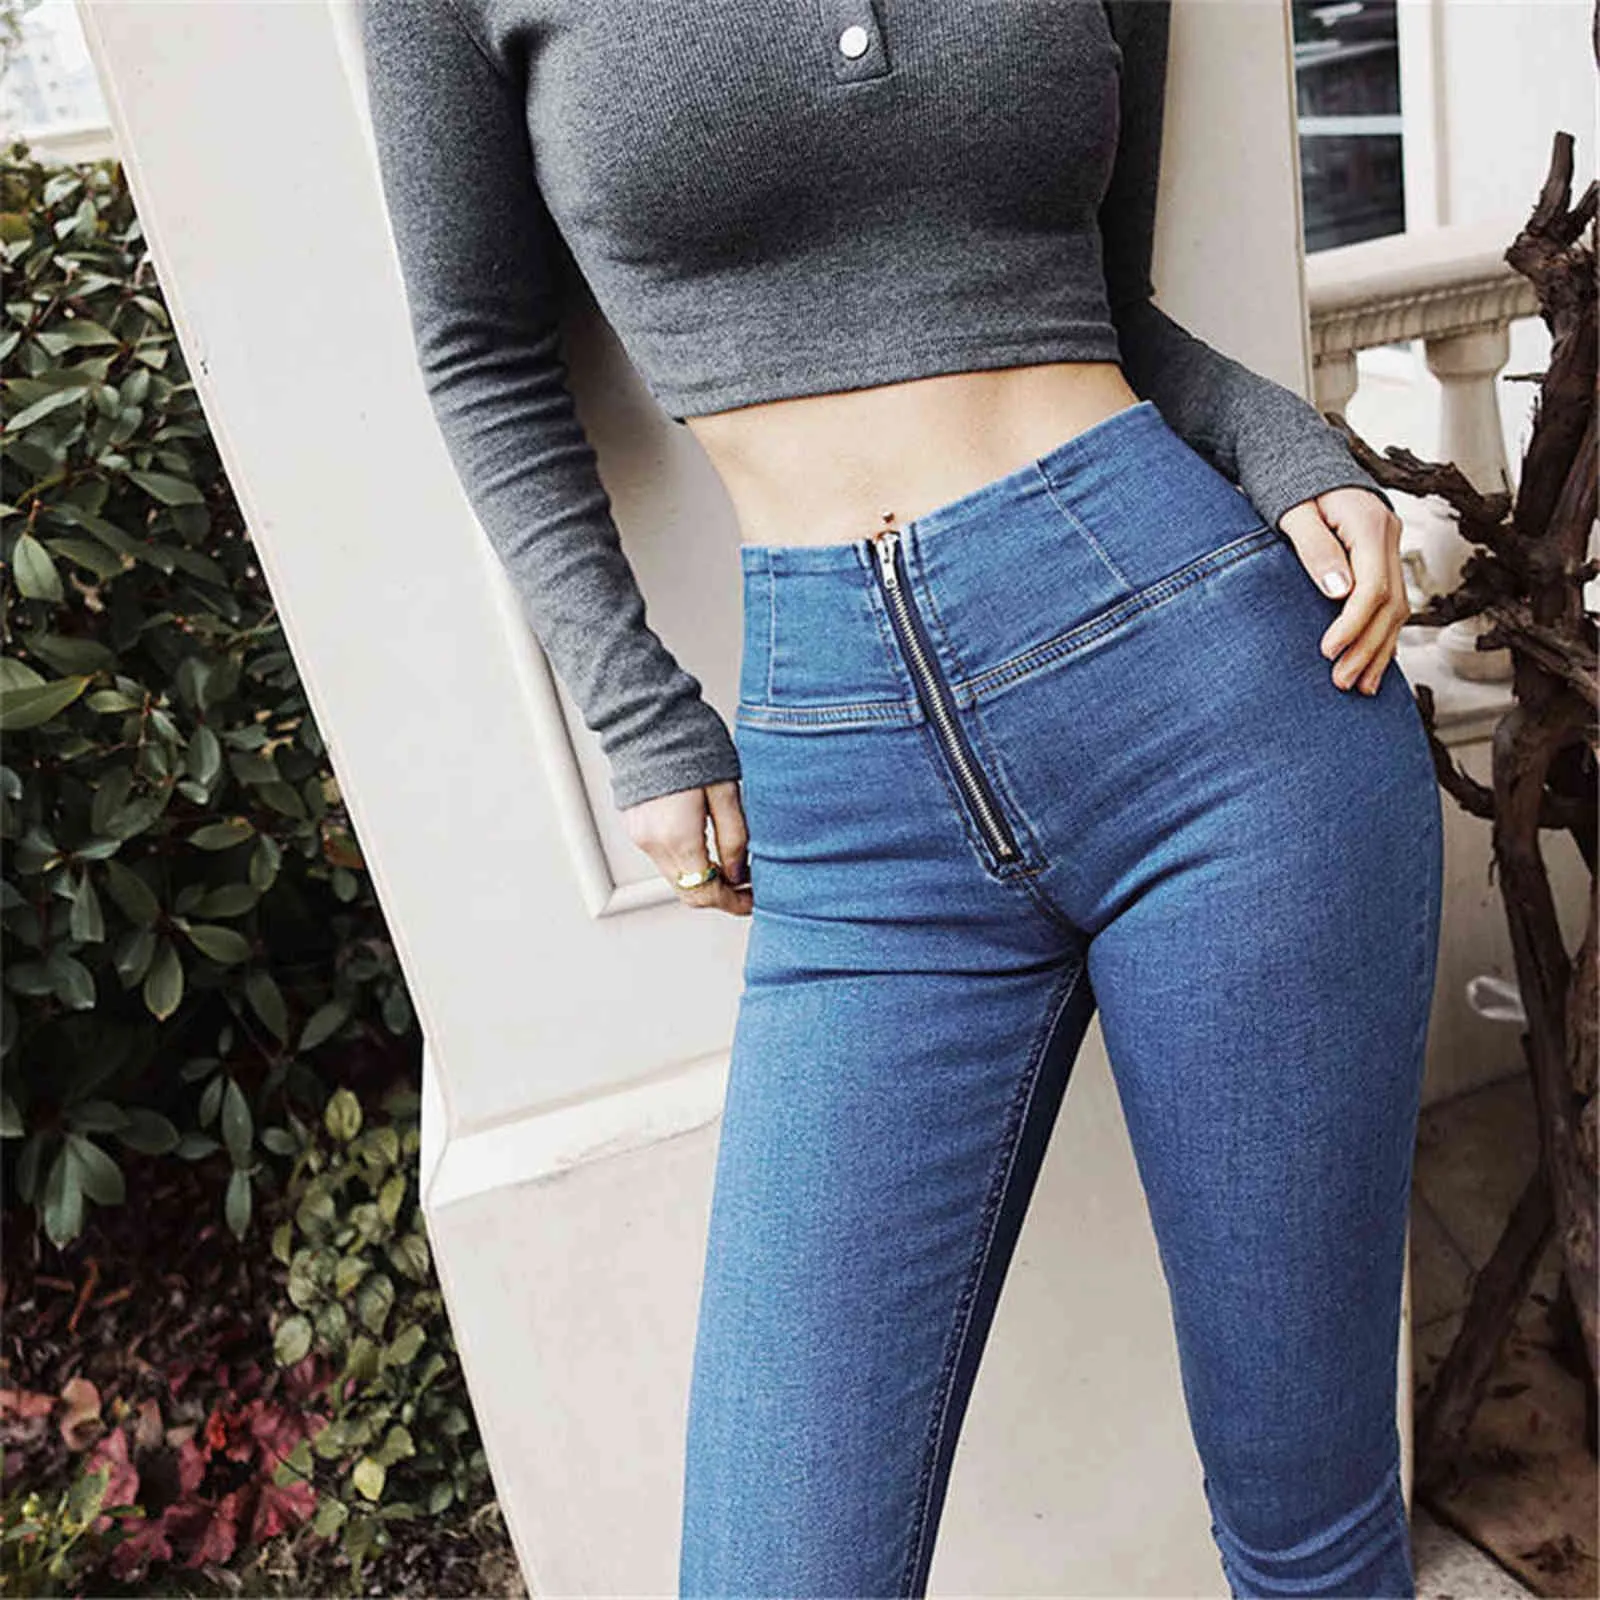 Sexy Butt Jeans For Women High Rise Curvy Shapewear Waist Denim